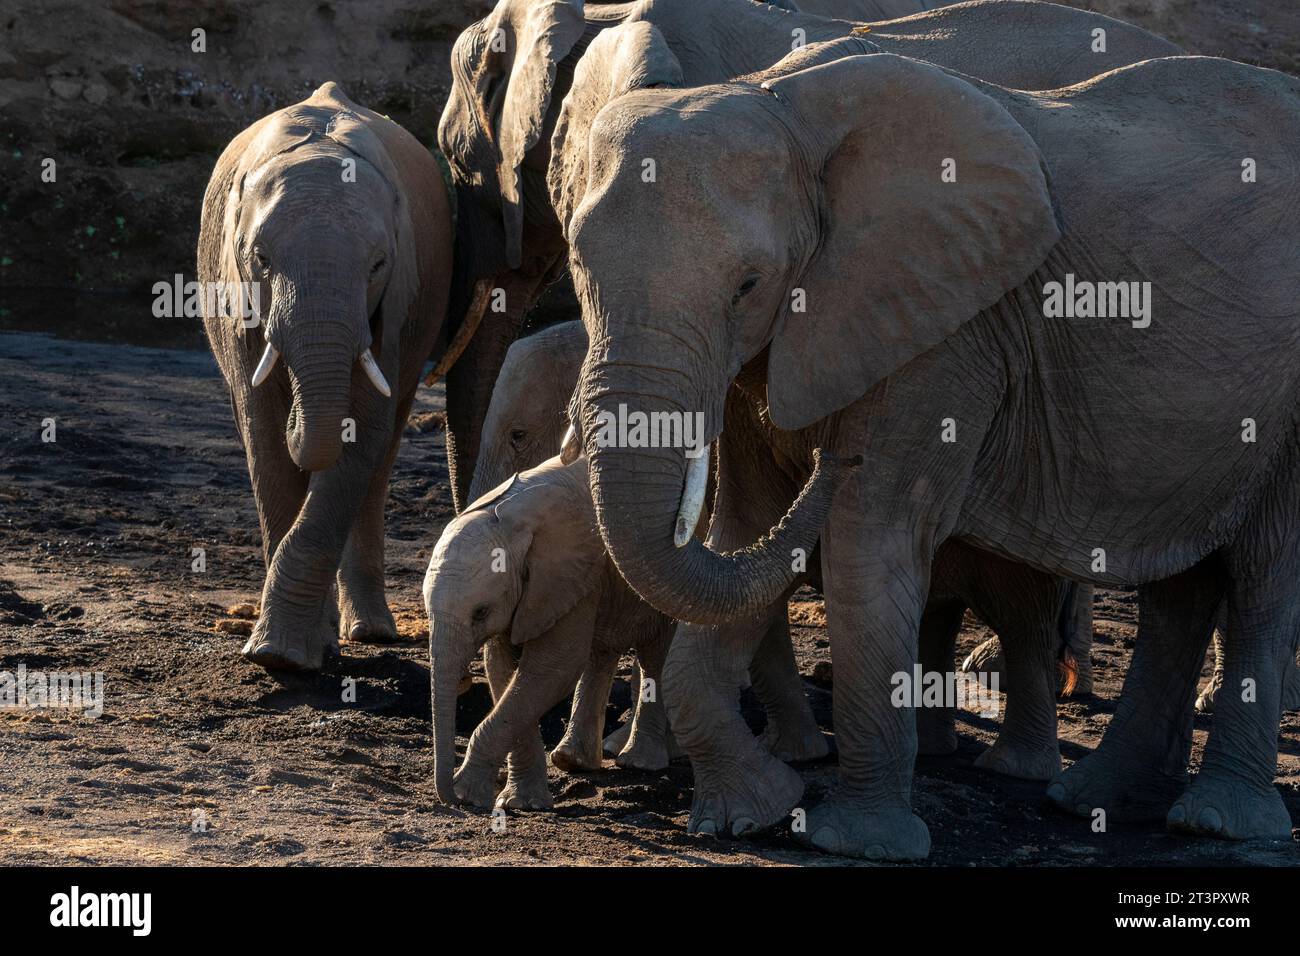 African elephants (Loxodonta africana), Mashatu Game Reserve, Botswana. Stock Photo